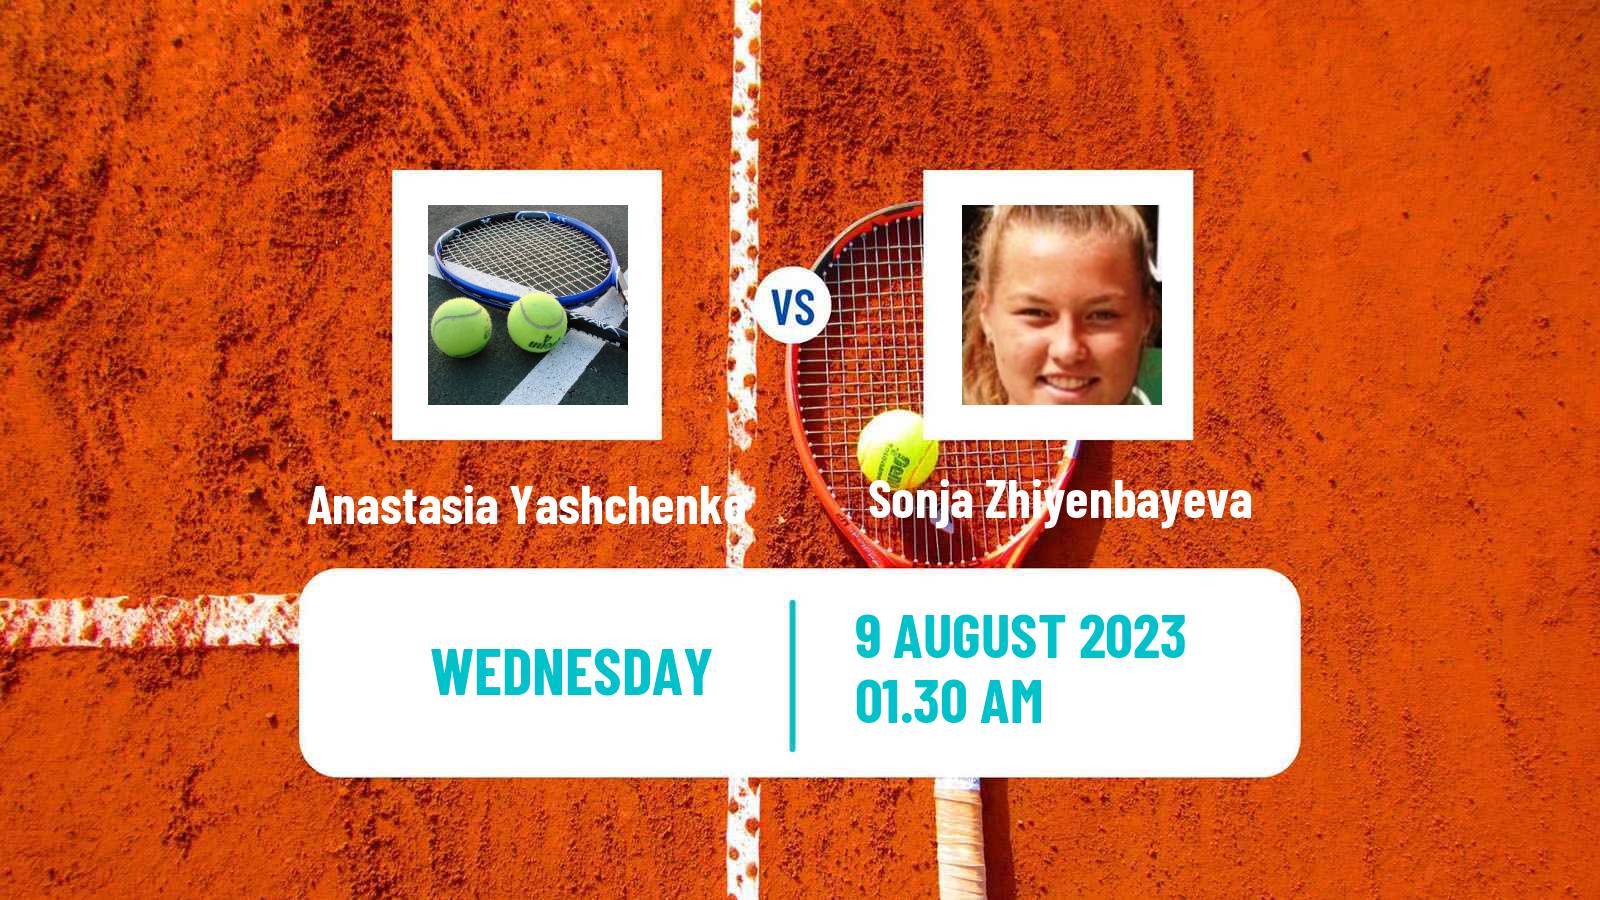 Tennis ITF W15 Ust Kamenogorsk Women Anastasia Yashchenko - Sonja Zhiyenbayeva